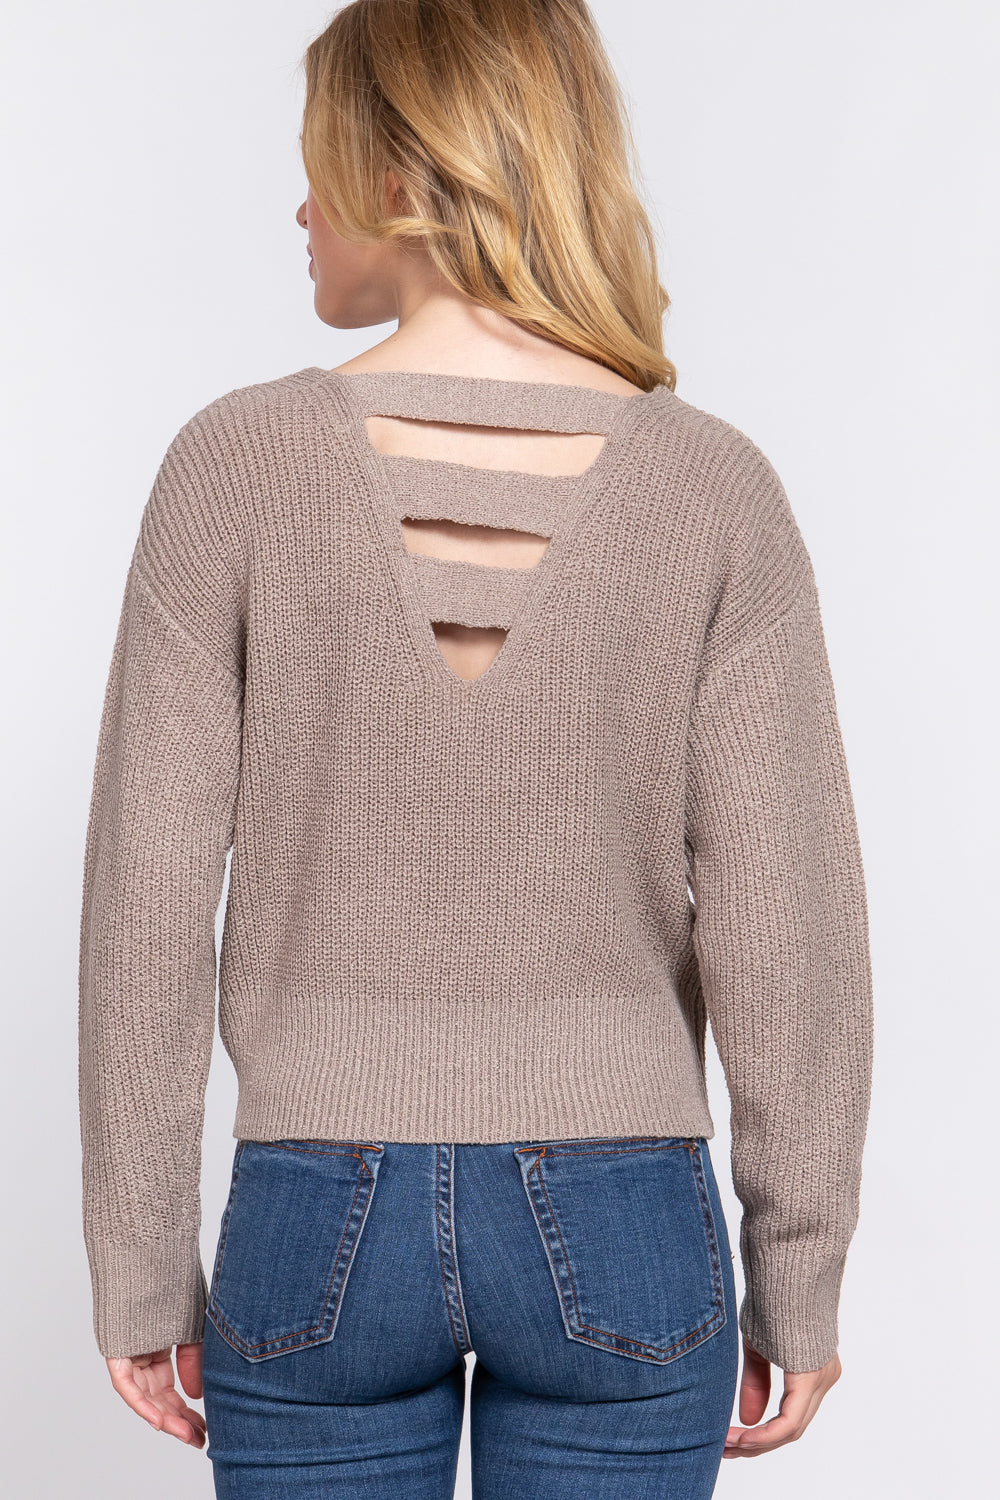 Dolman Sleeve Strappy Open Back Sweater